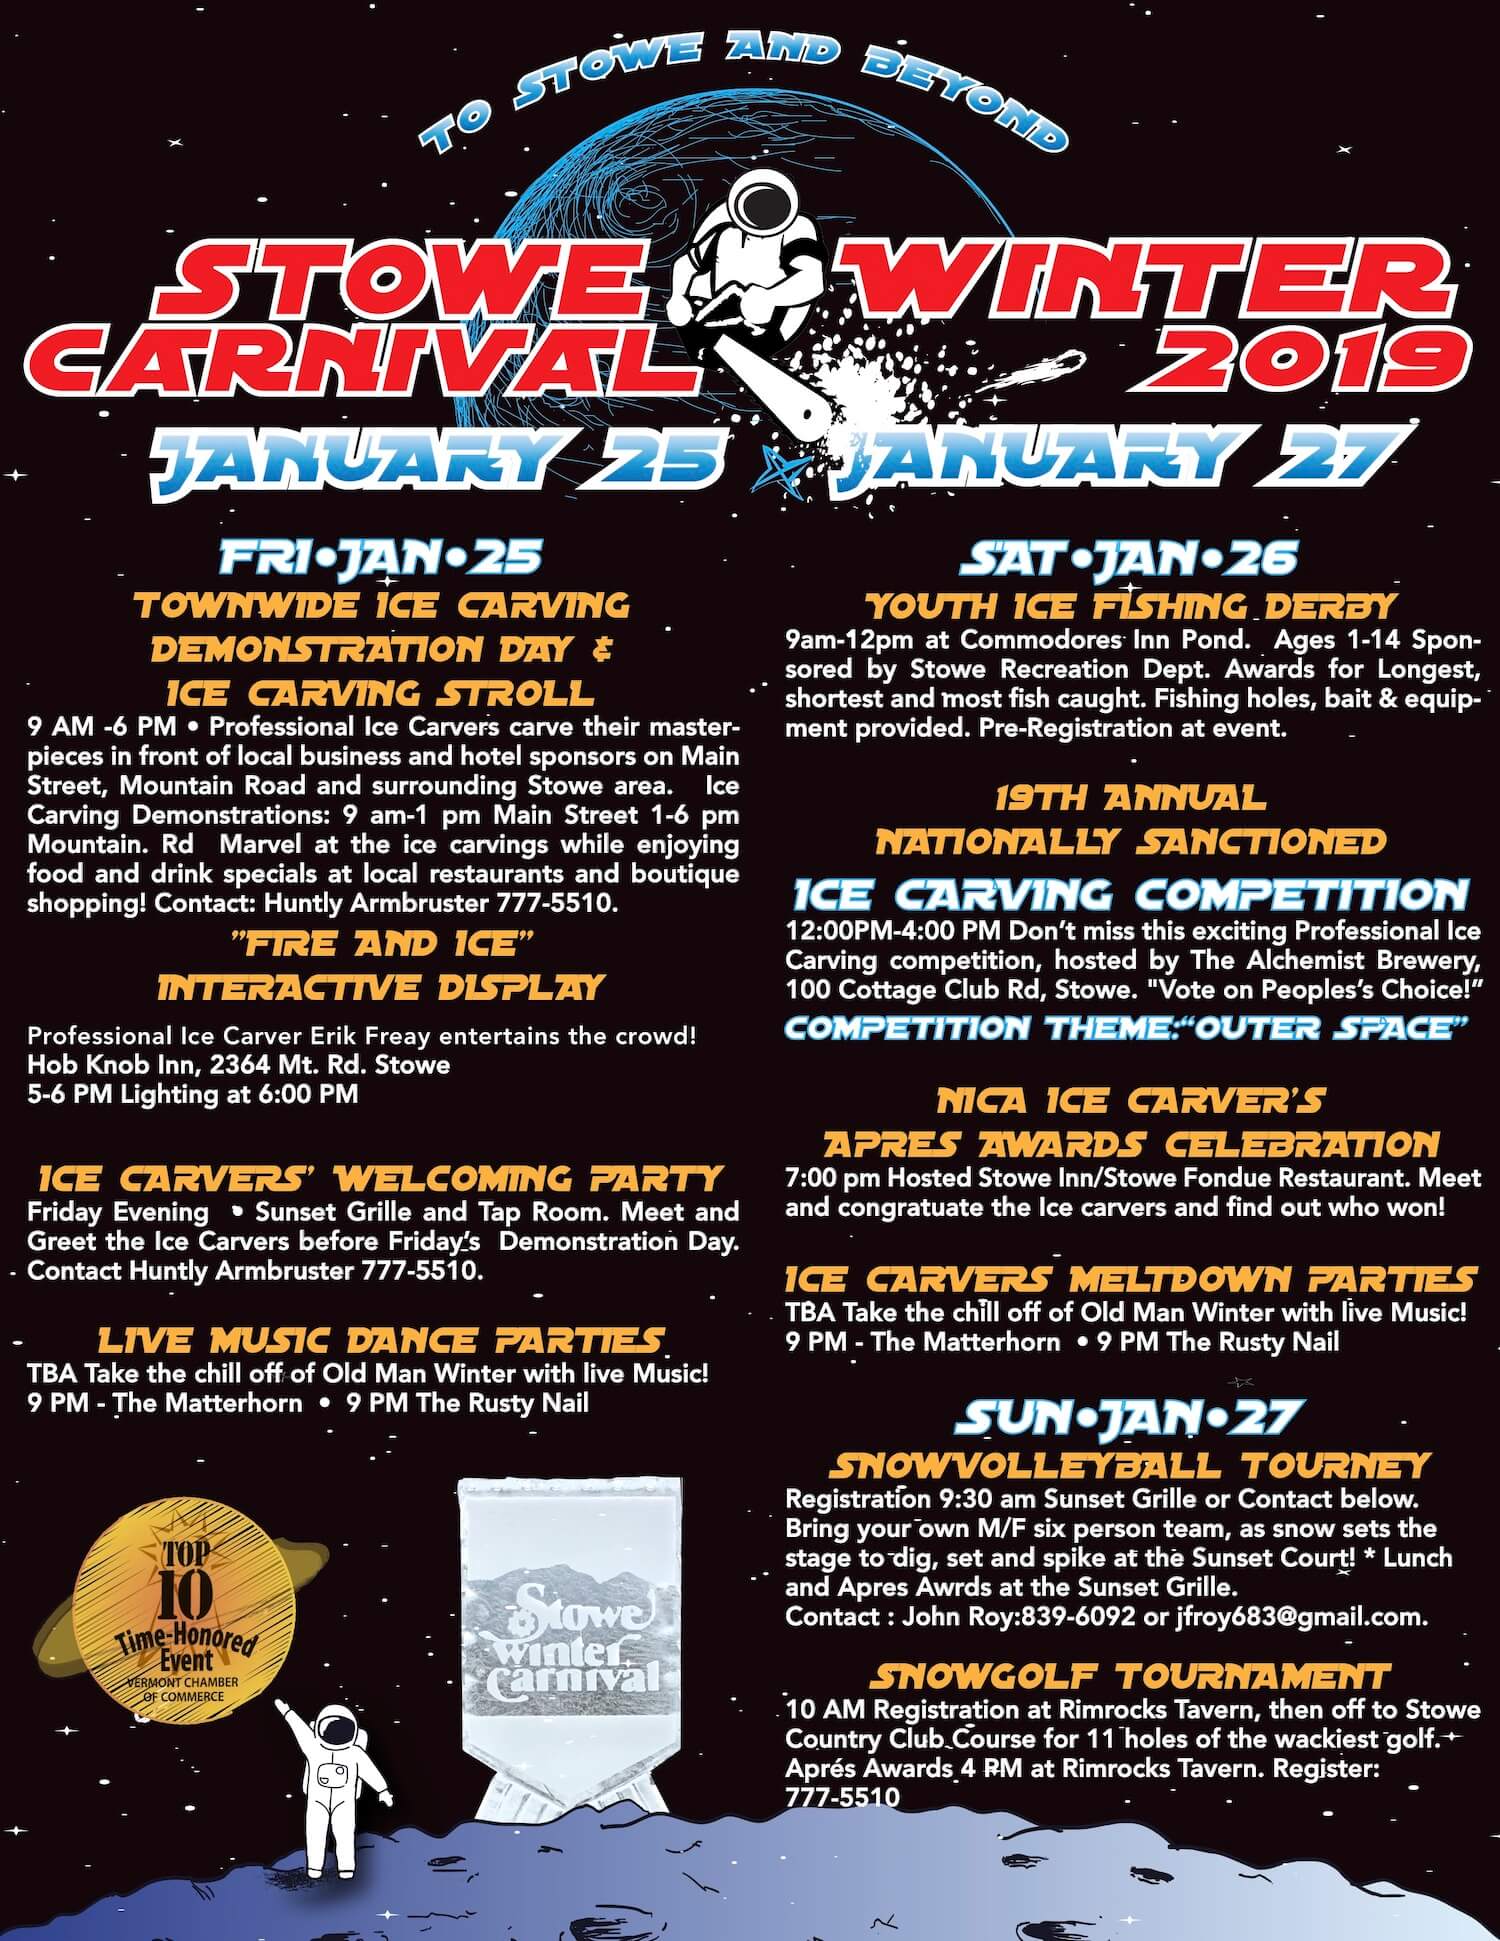 swc-schedule-2019 - Stowe Winter Carnival